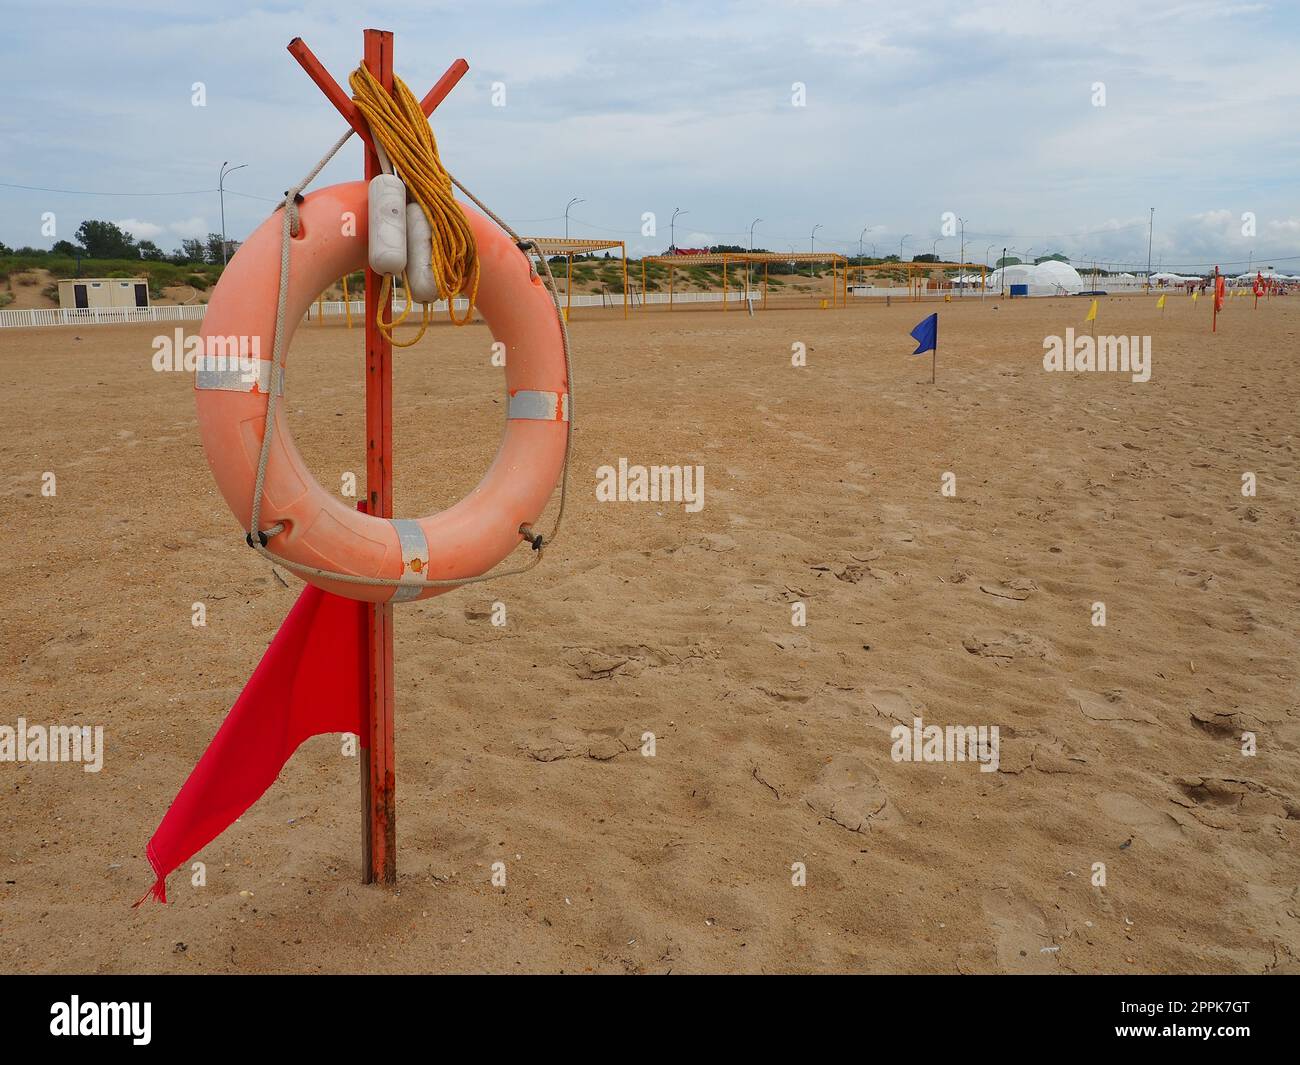 Anapa, Russland, 10. August 2021 Lifebuoy mit einer roten Flagge an einem Sandstrand. Orangefarbenes Rettungsboot an einer Stange, um Menschen zu retten, die im Meer ertrinken. Rettungspunkt am Ufer. Stürmisches Wetter am Schwarzen Meer Stockfoto